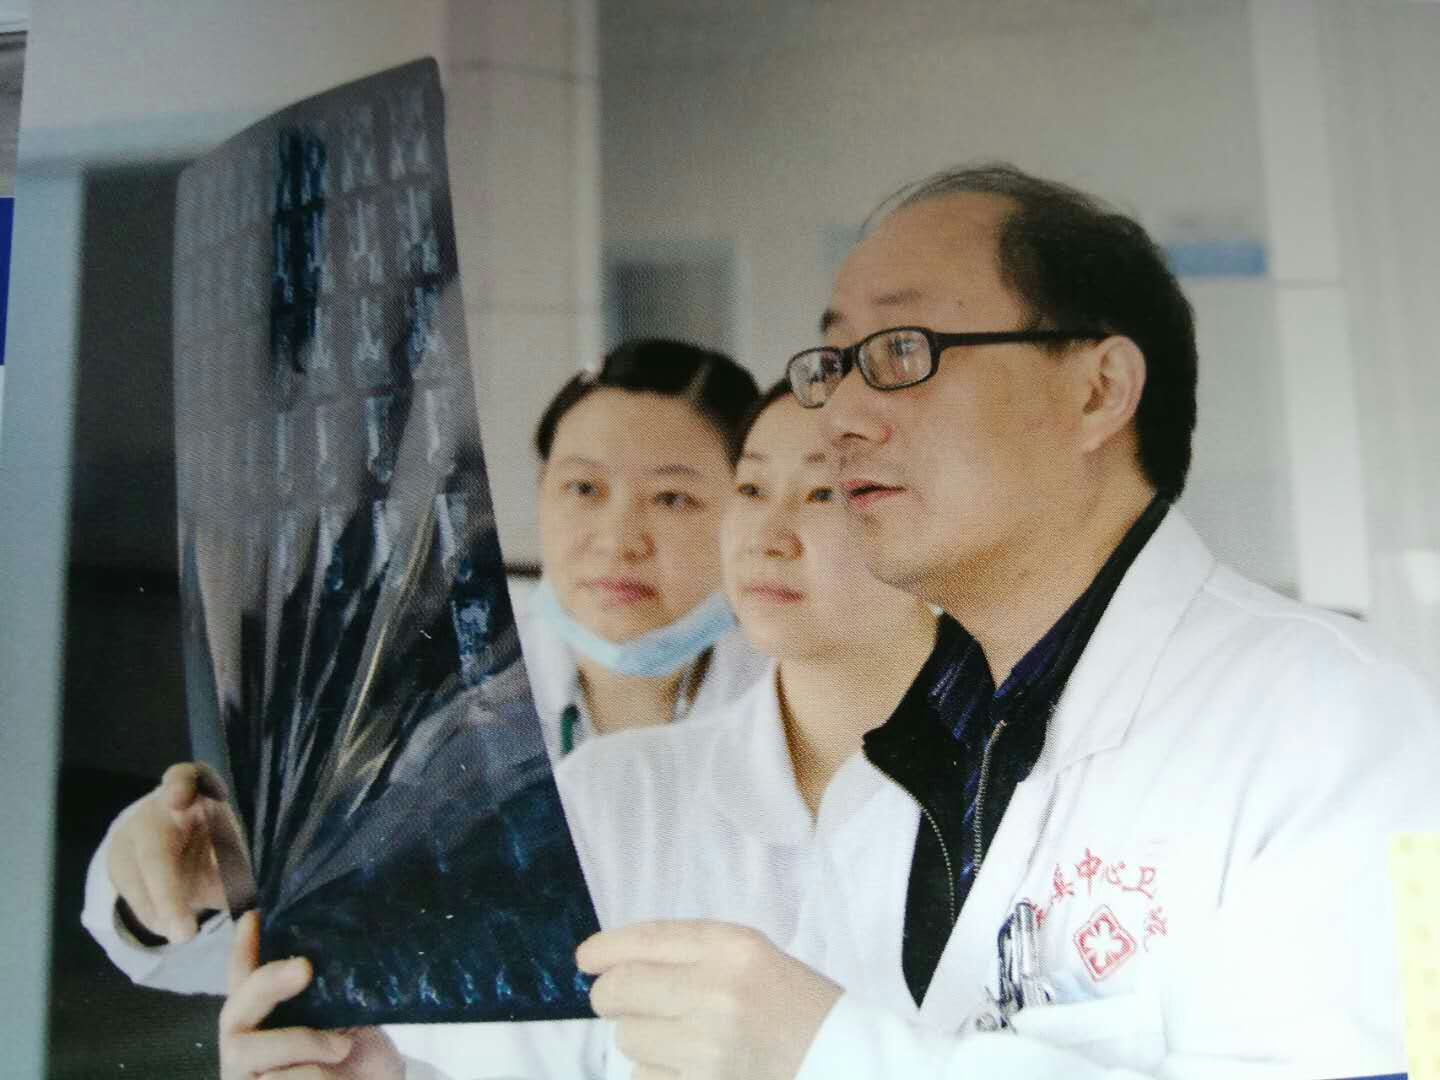 毛进安：行医救人20年 将为群众解决疾苦作为人生追求